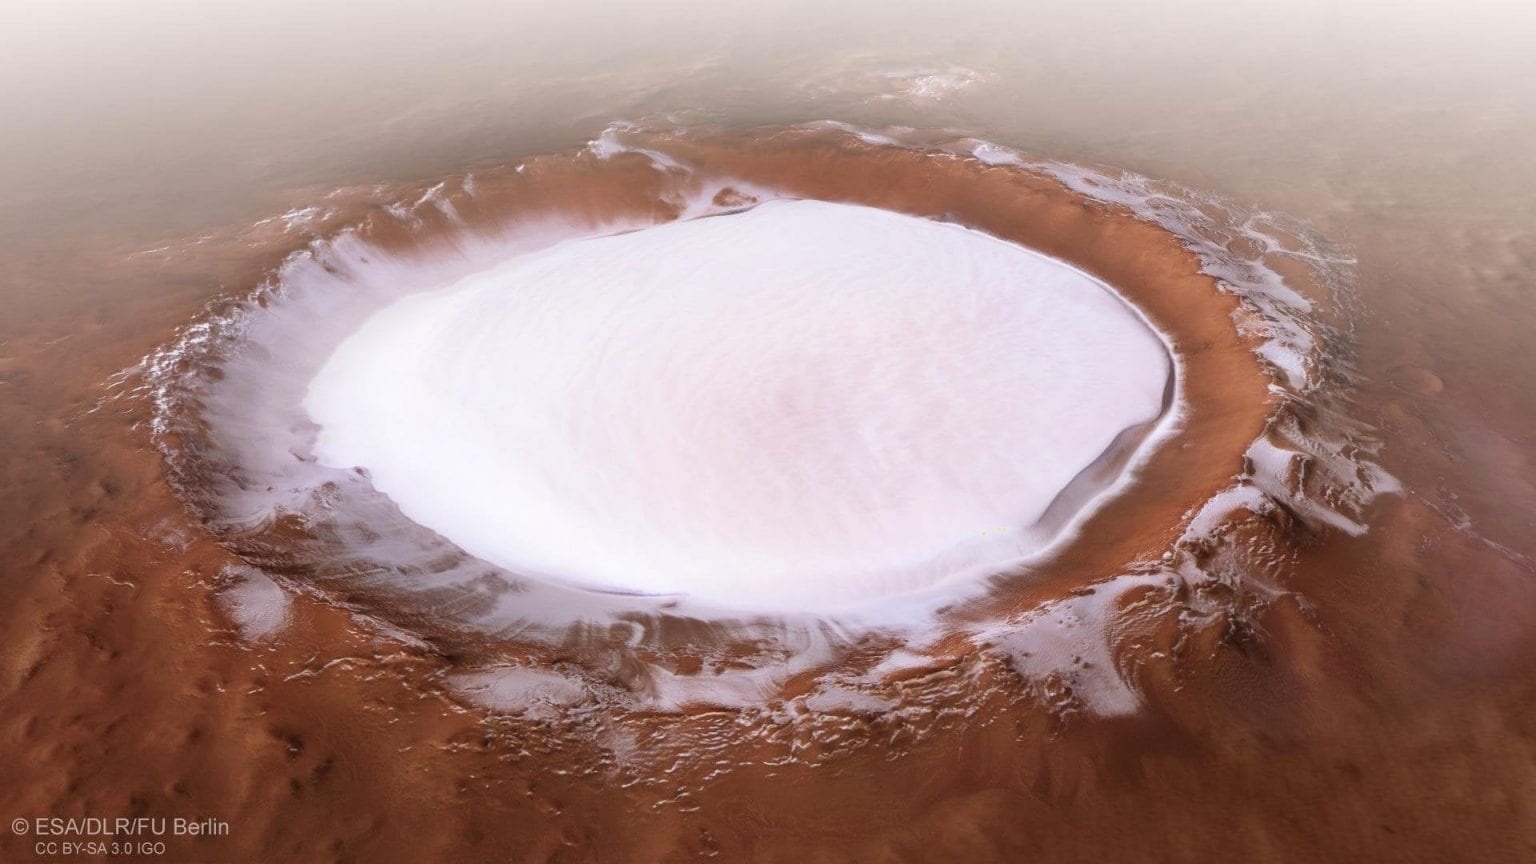 Masivni ledenjak unutar kratera Koroljov na Marsu. Najnovija istraživanja marsovskih ledenjaka otkrila su da je Mars prošao kroz mnoga ledena doba u proteklih 300-800 milijuna godina (©ESA/DLR/FU Berlin).